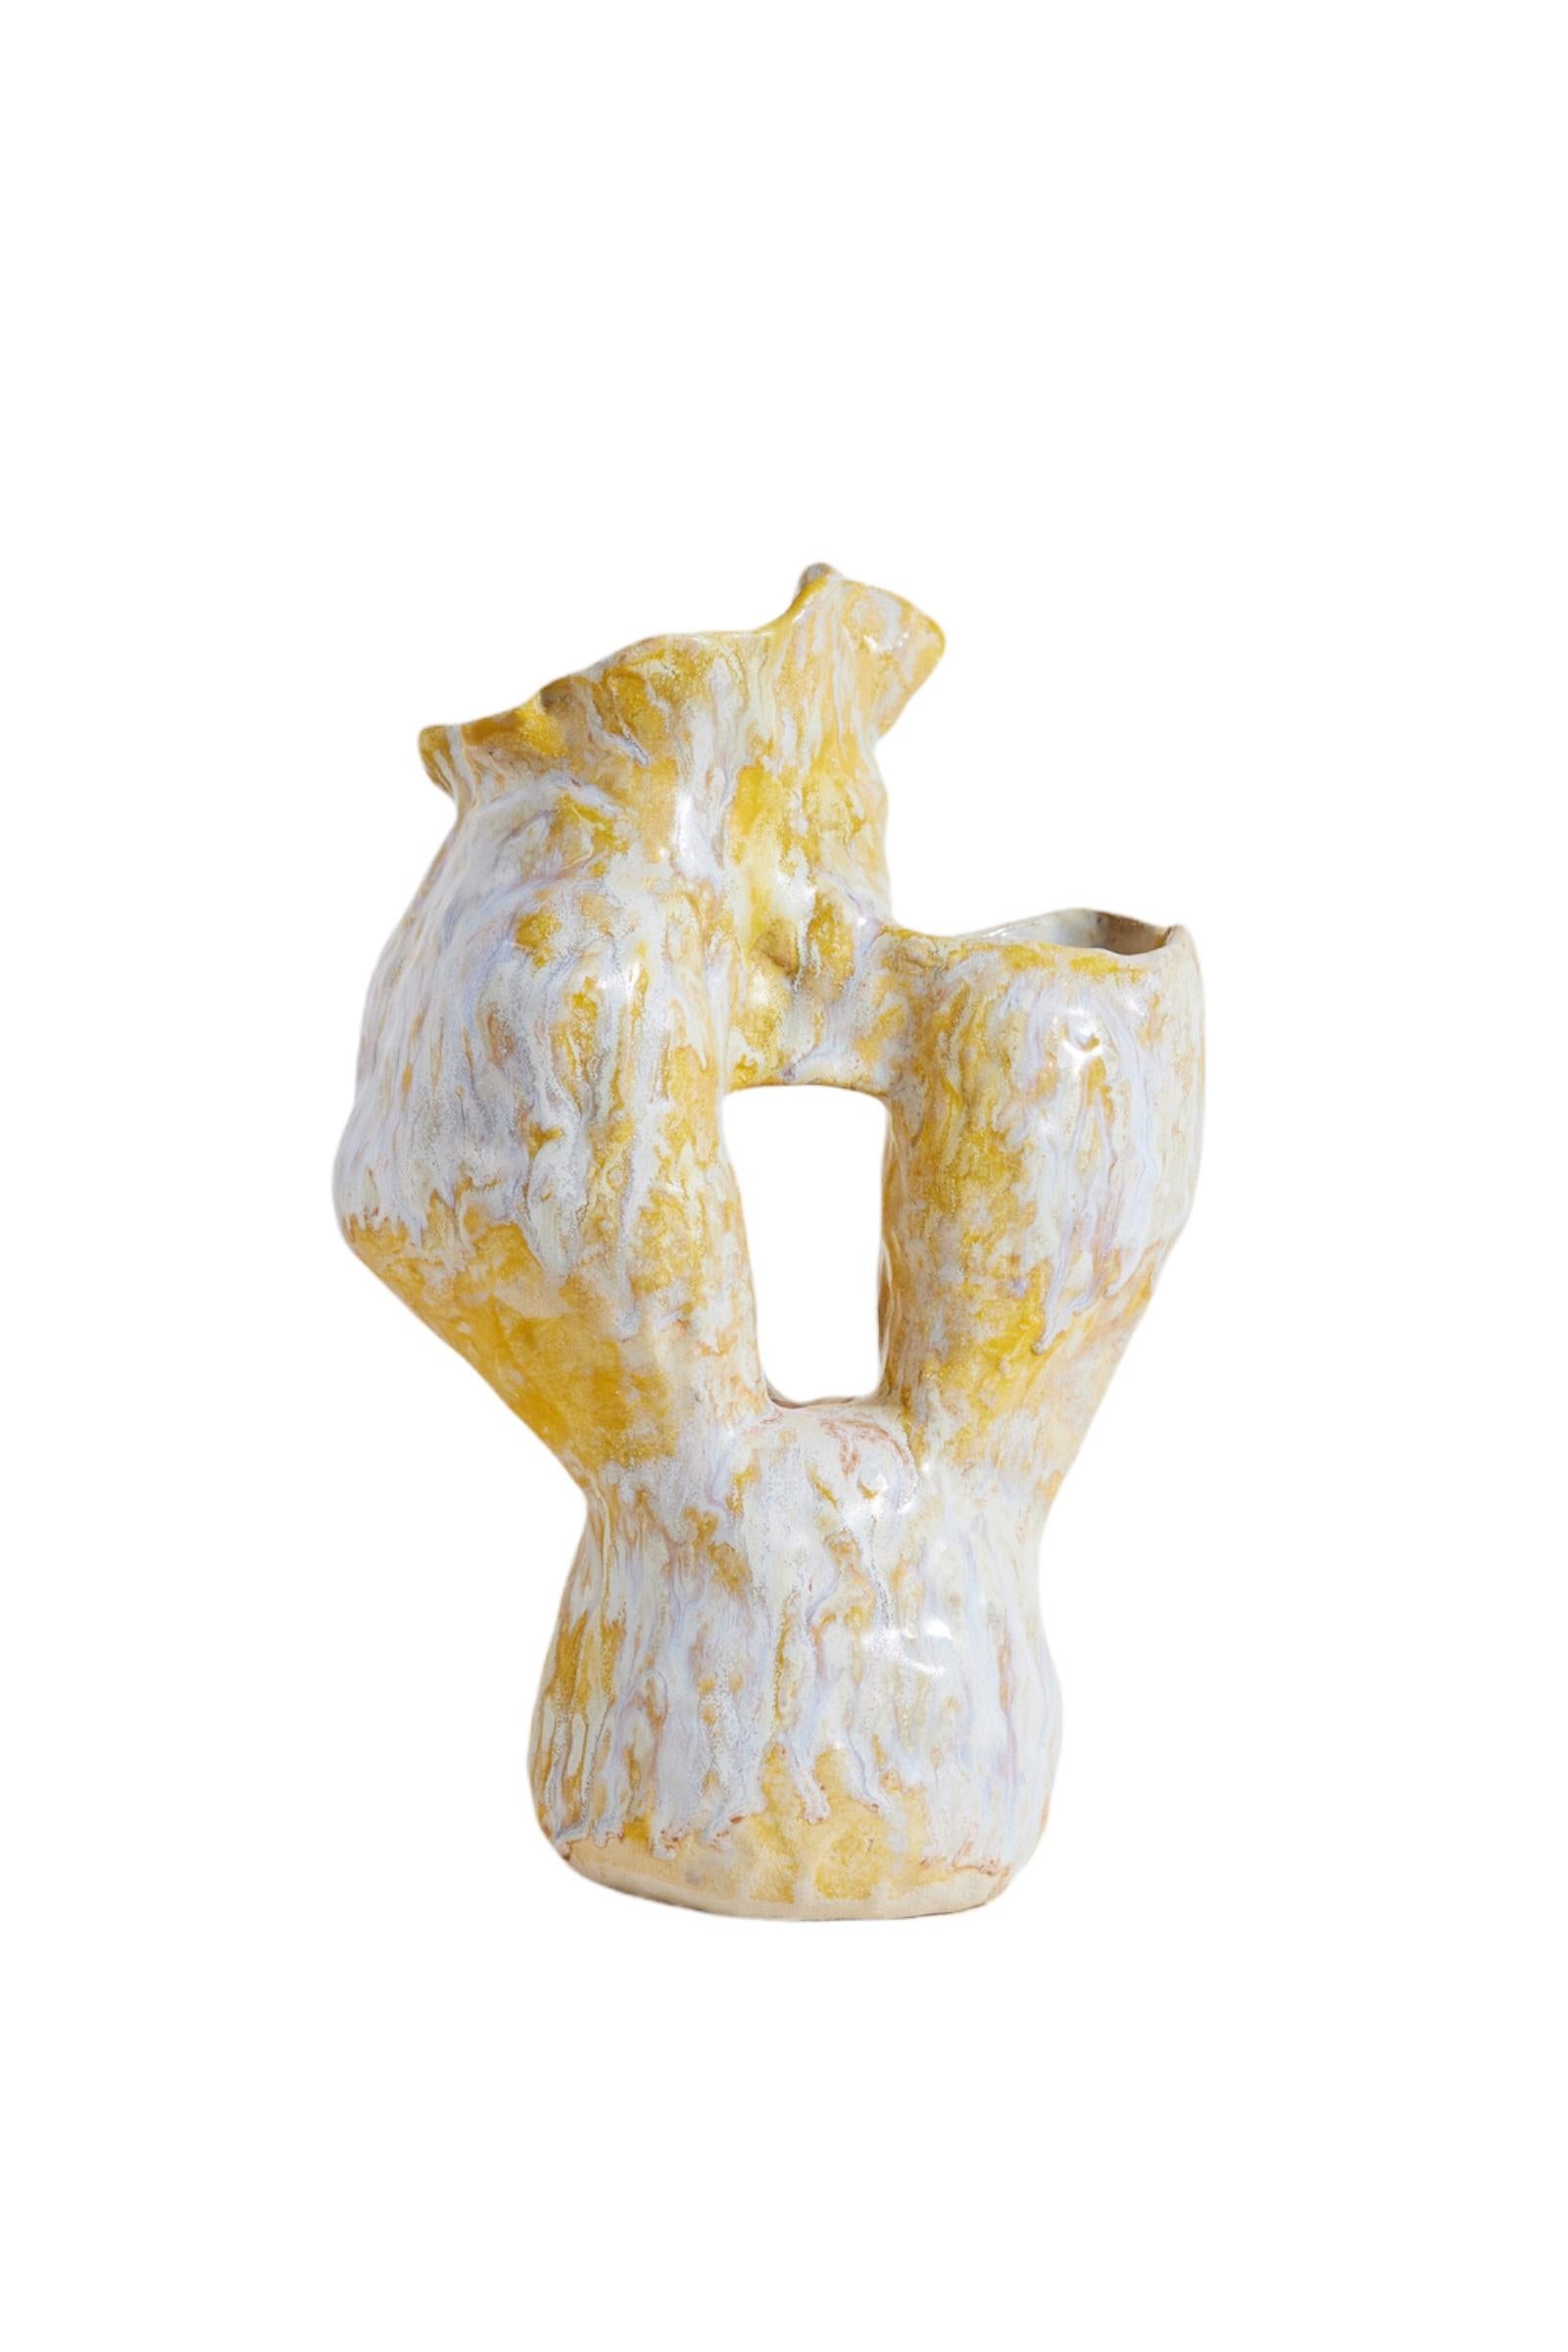 Glazed Unique Ukiyo I Vase by Marthine Spinnangr For Sale